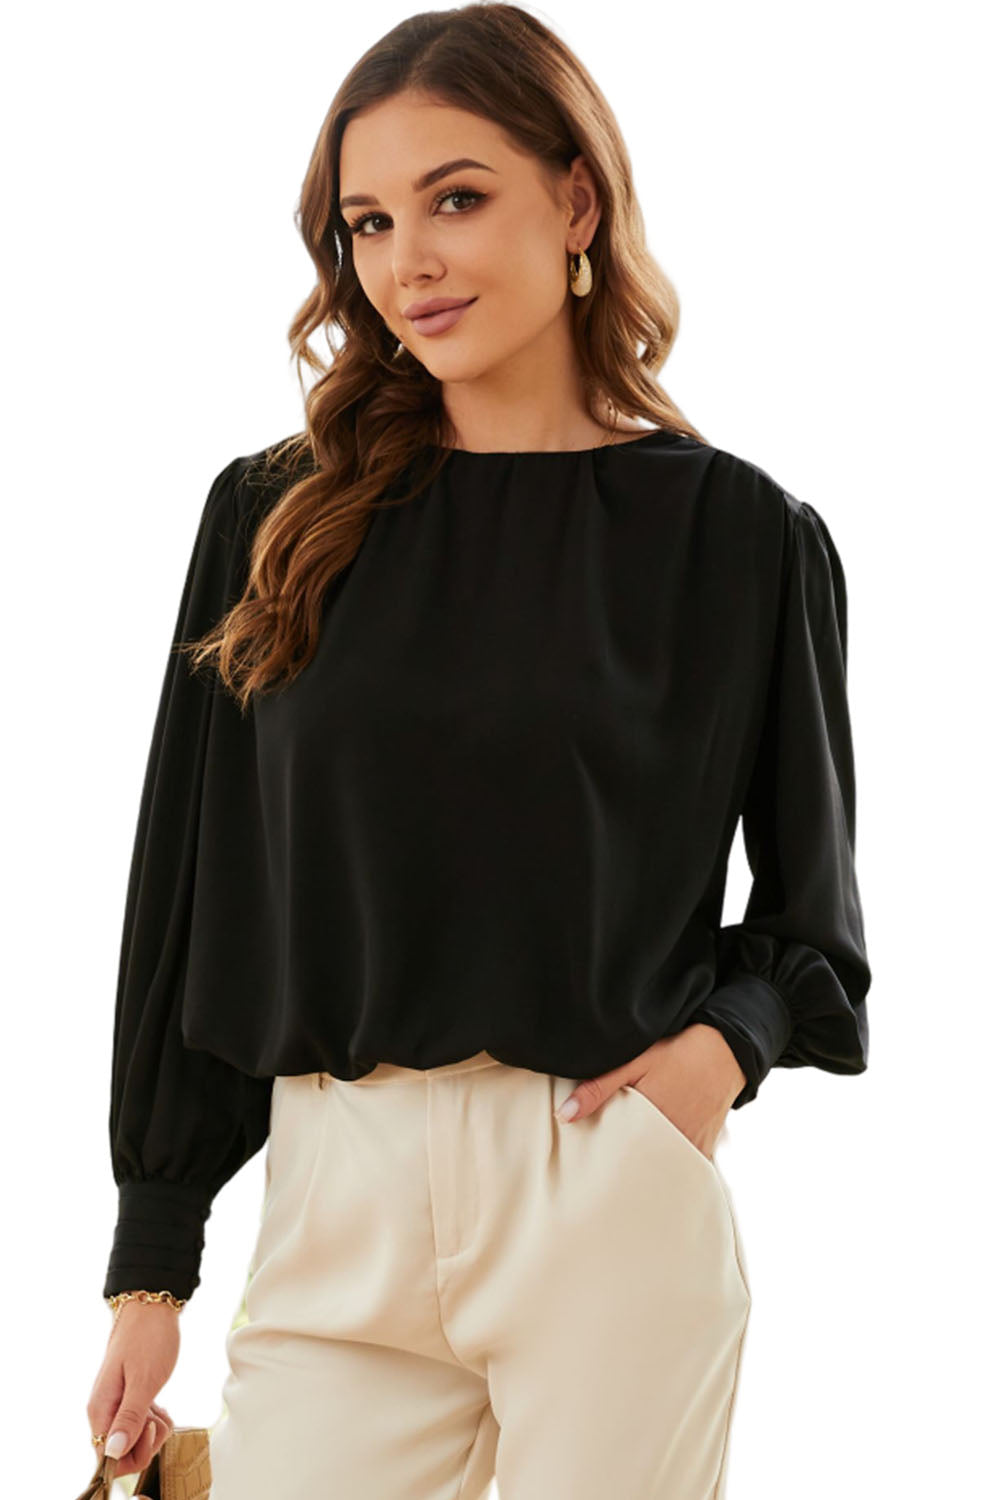 Schwarze, plissierte, lockere Bluse mit gepolsterten Schultern und geknöpften Manschetten